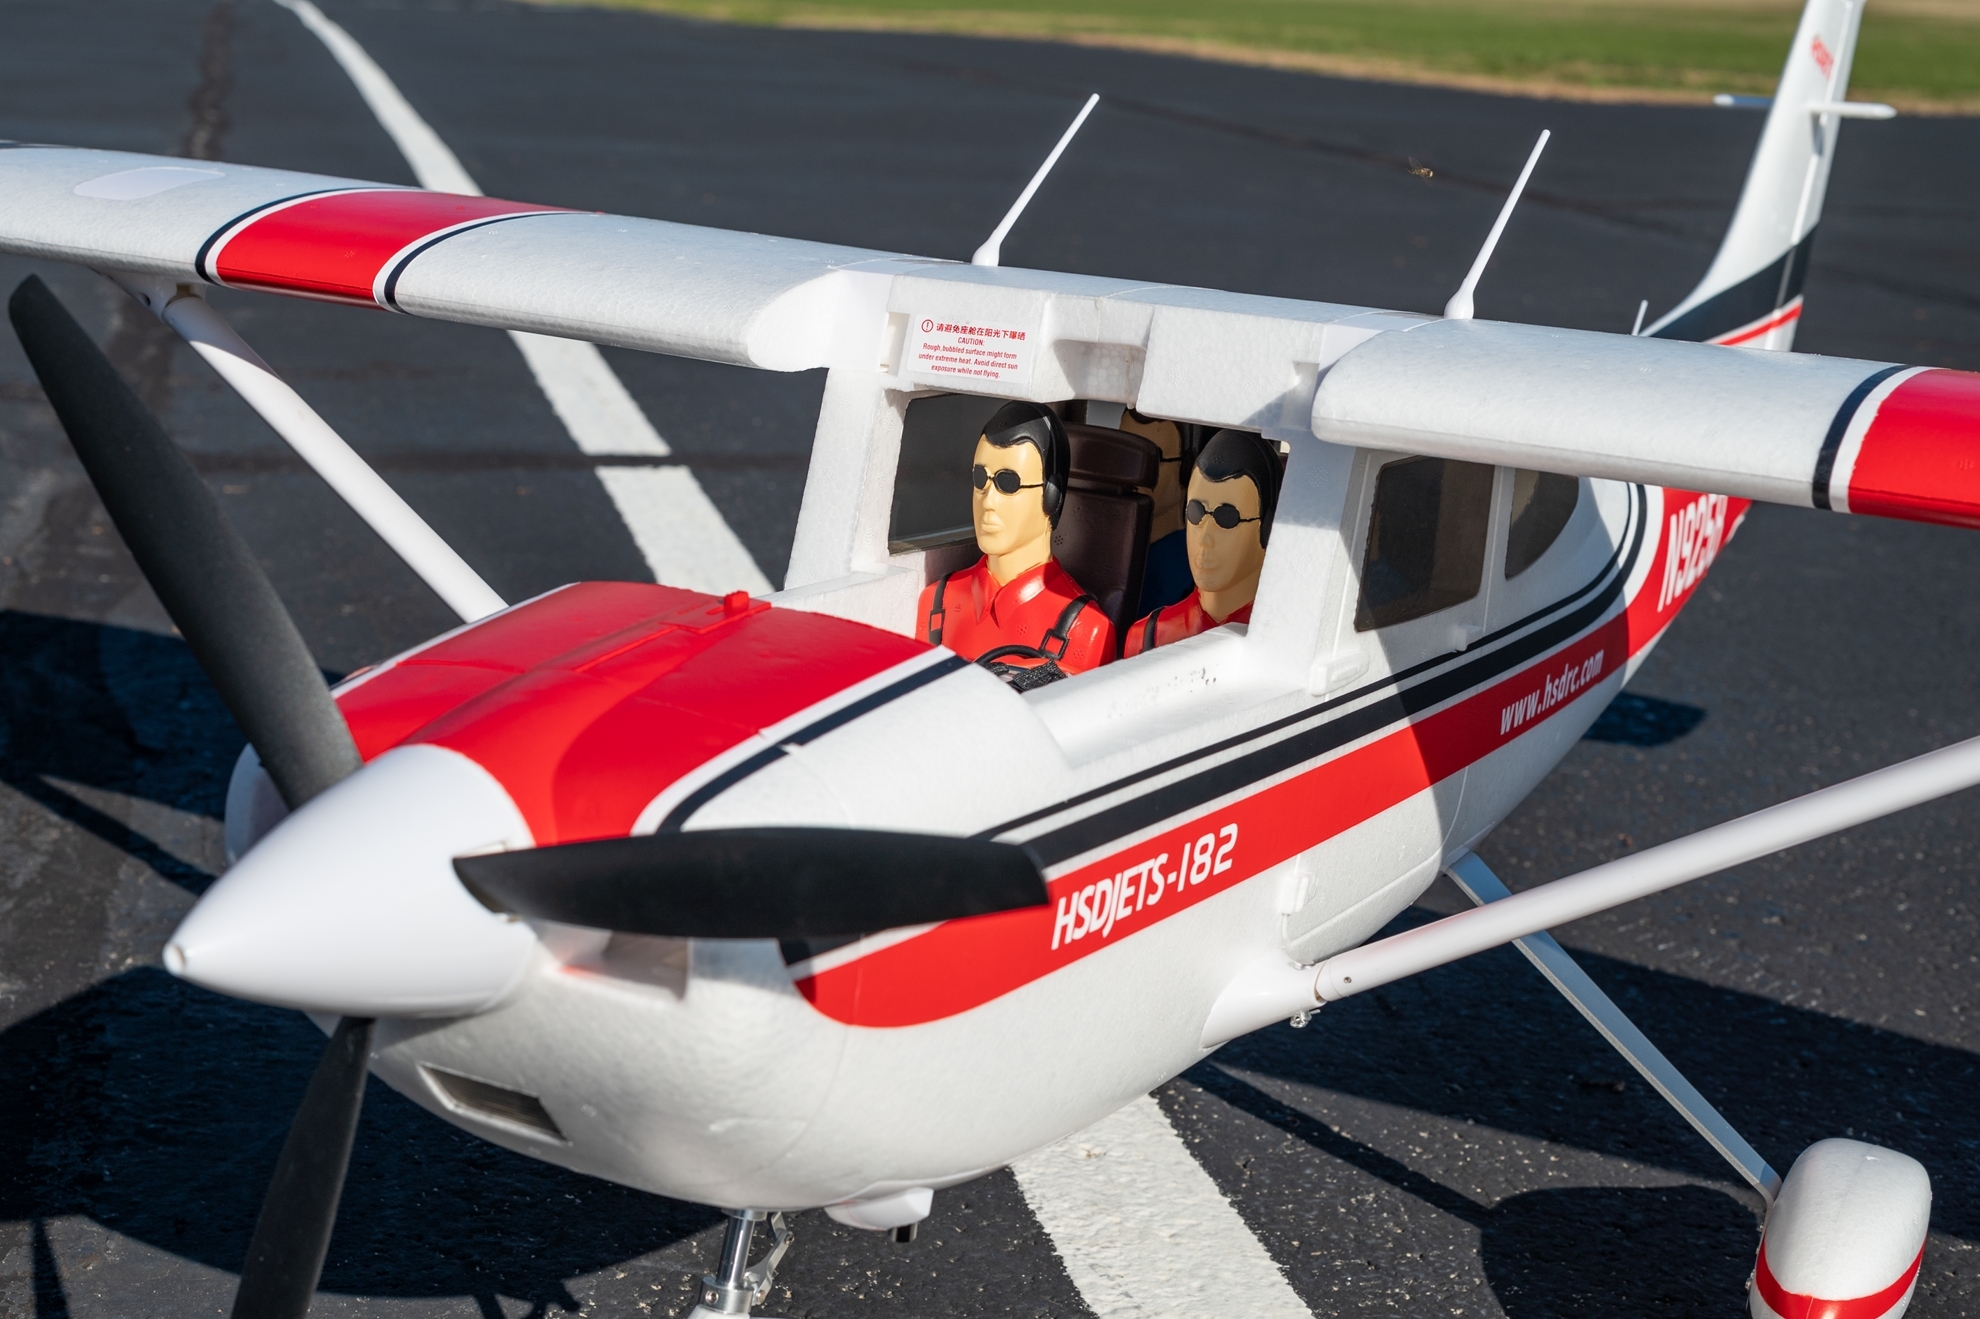 Cessna 182 HSDjets